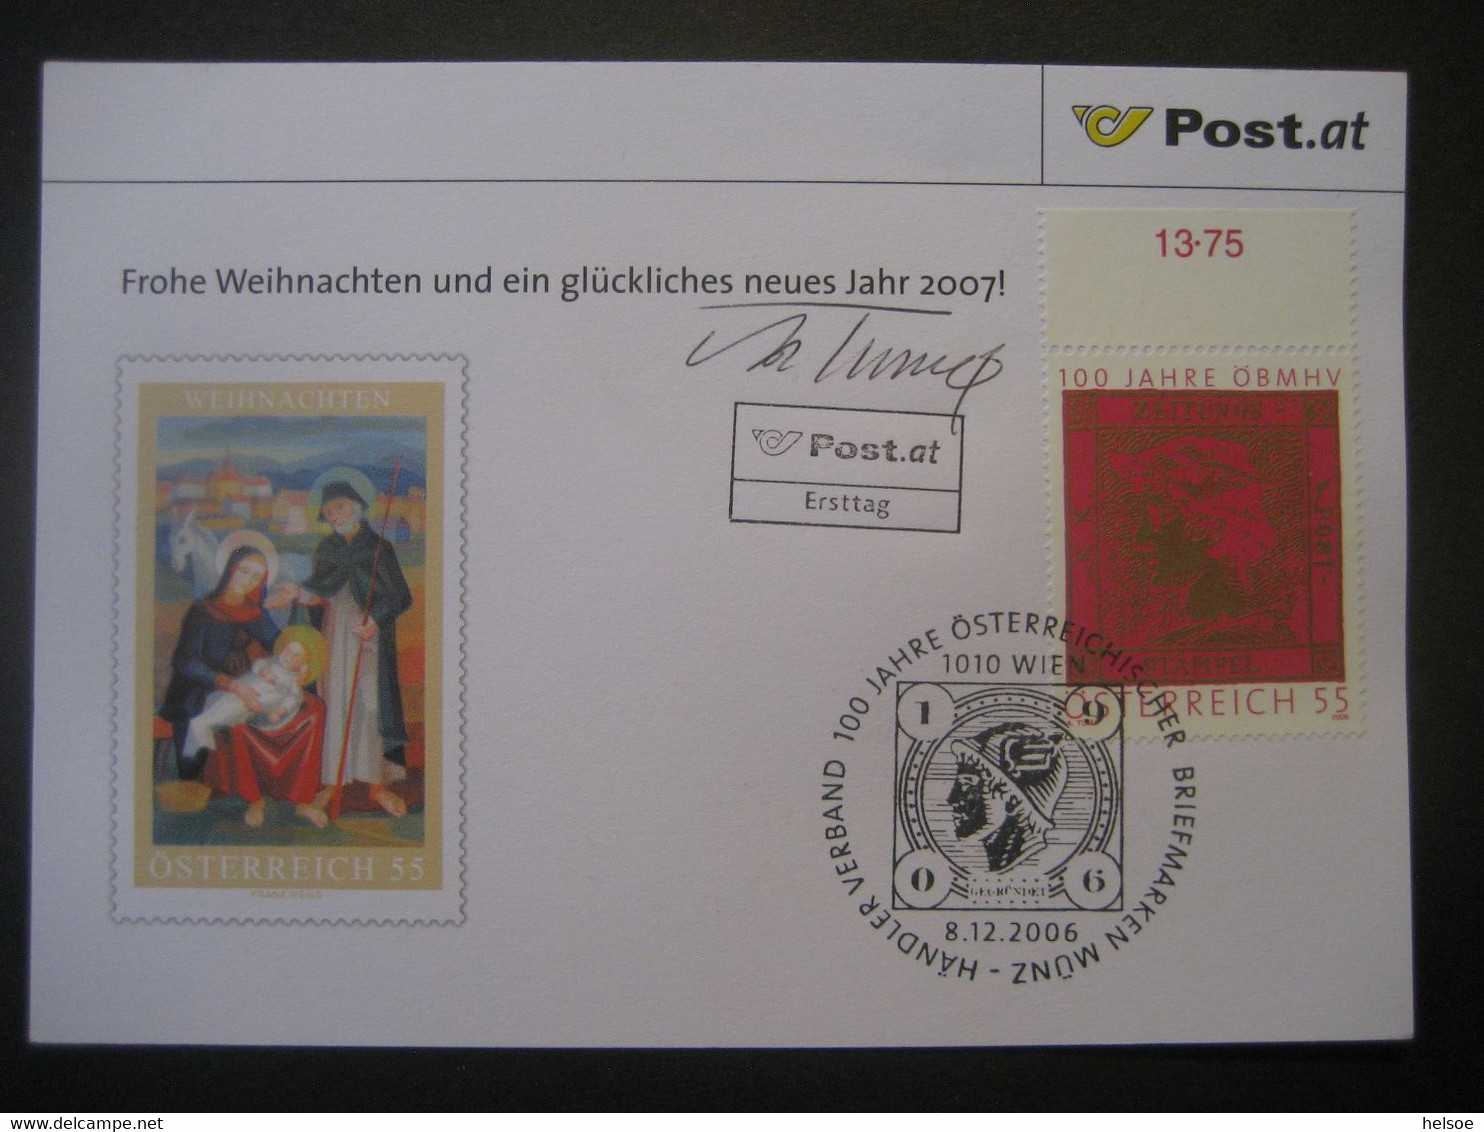 Osterreich- Advent 100 Jahre ÖBMSV, FDC Mit Autogramm Von Adolf Tuma - Lettres & Documents